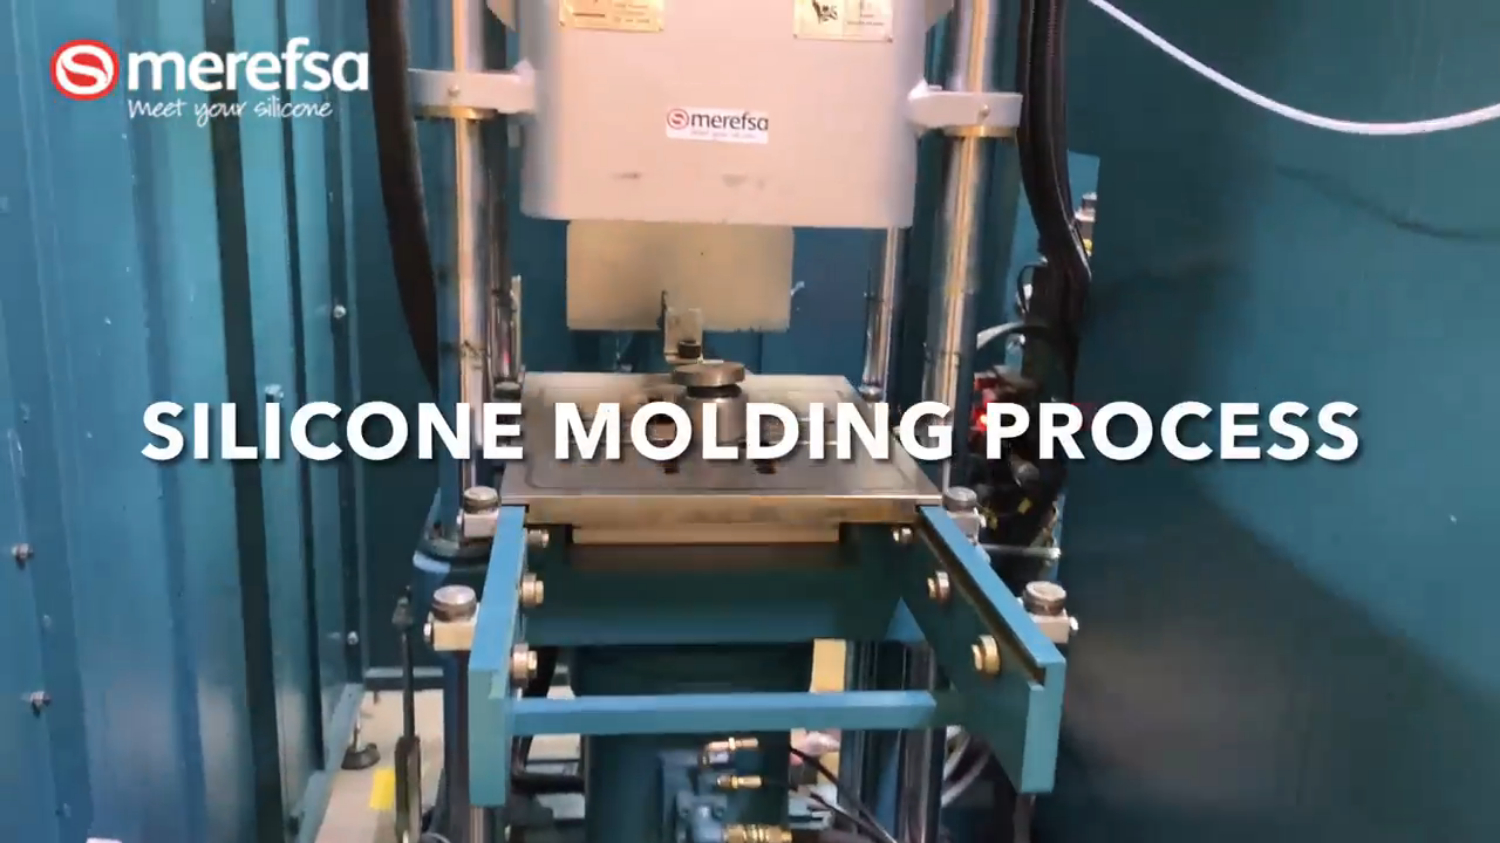 Silicone molding press 4.0